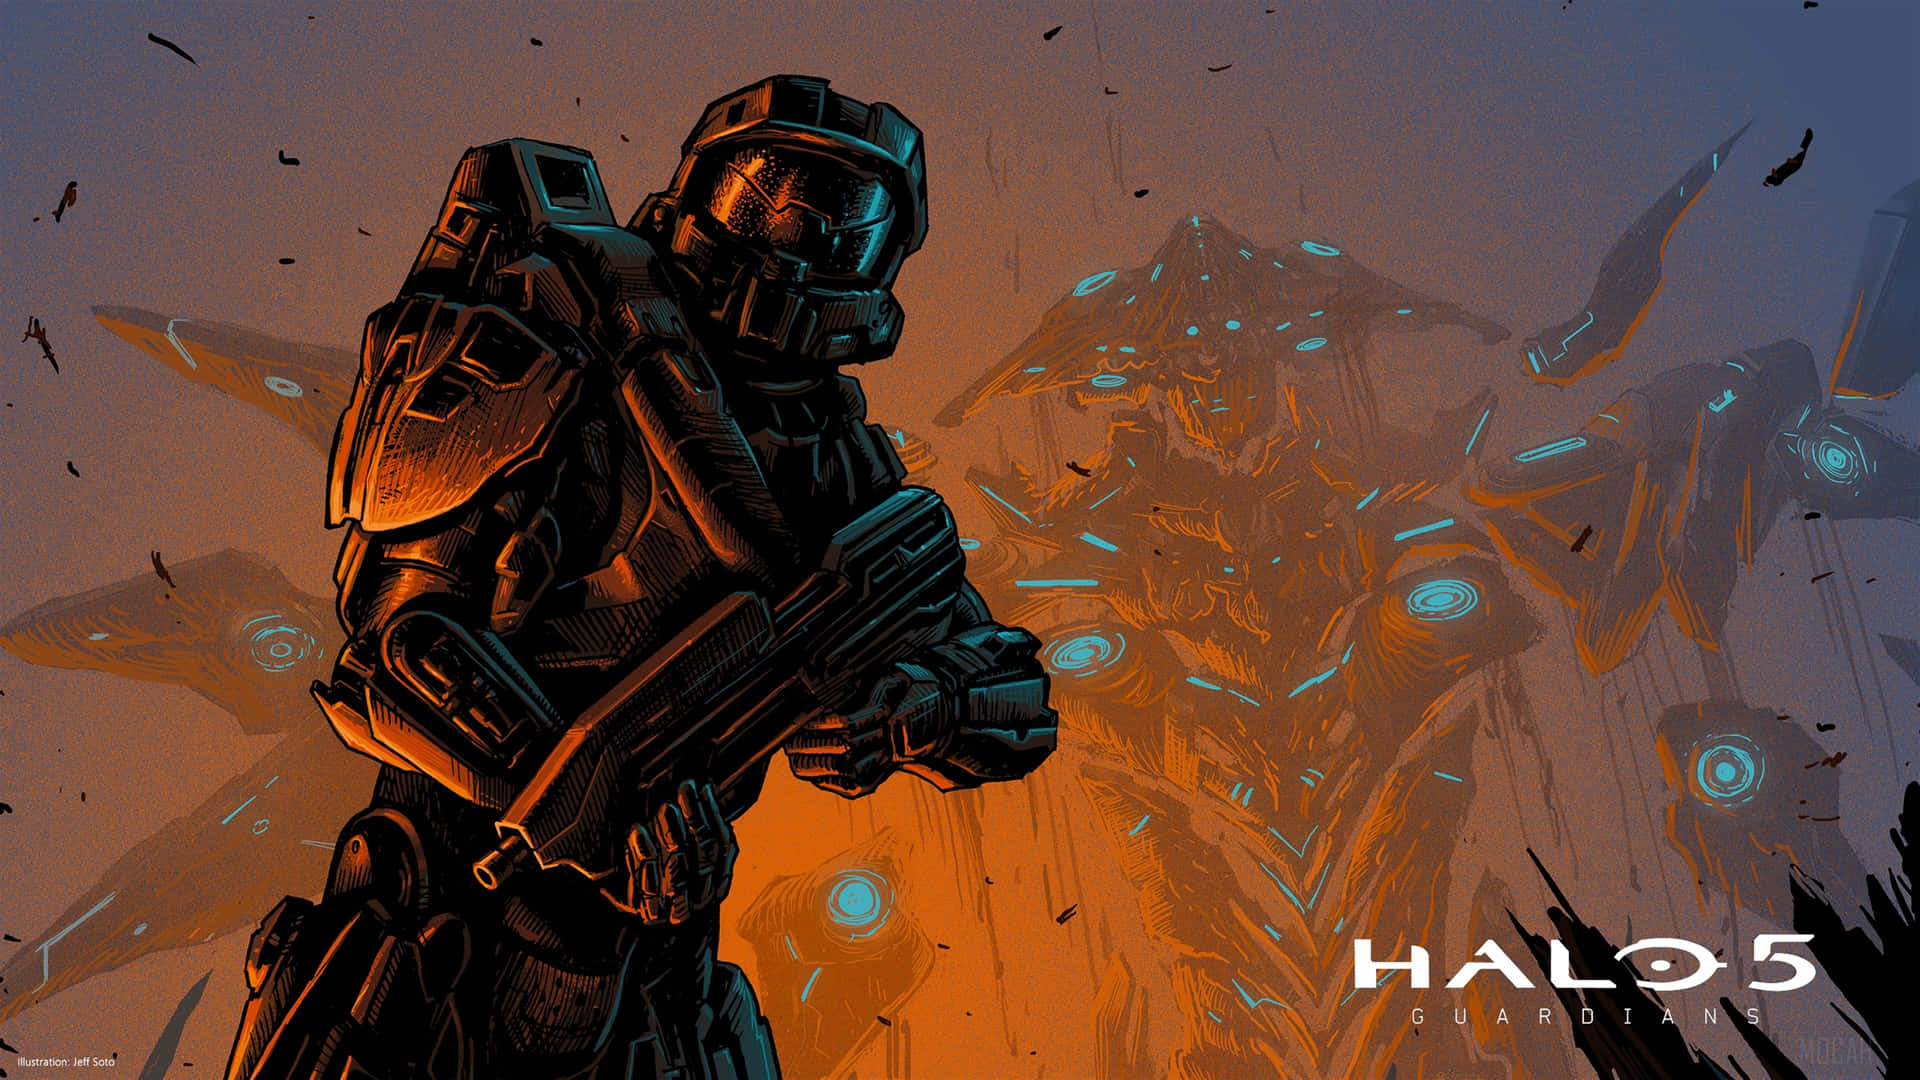 Thrilling 4k Wallpaper Of Halo 5's Intense Battle Scene Wallpaper